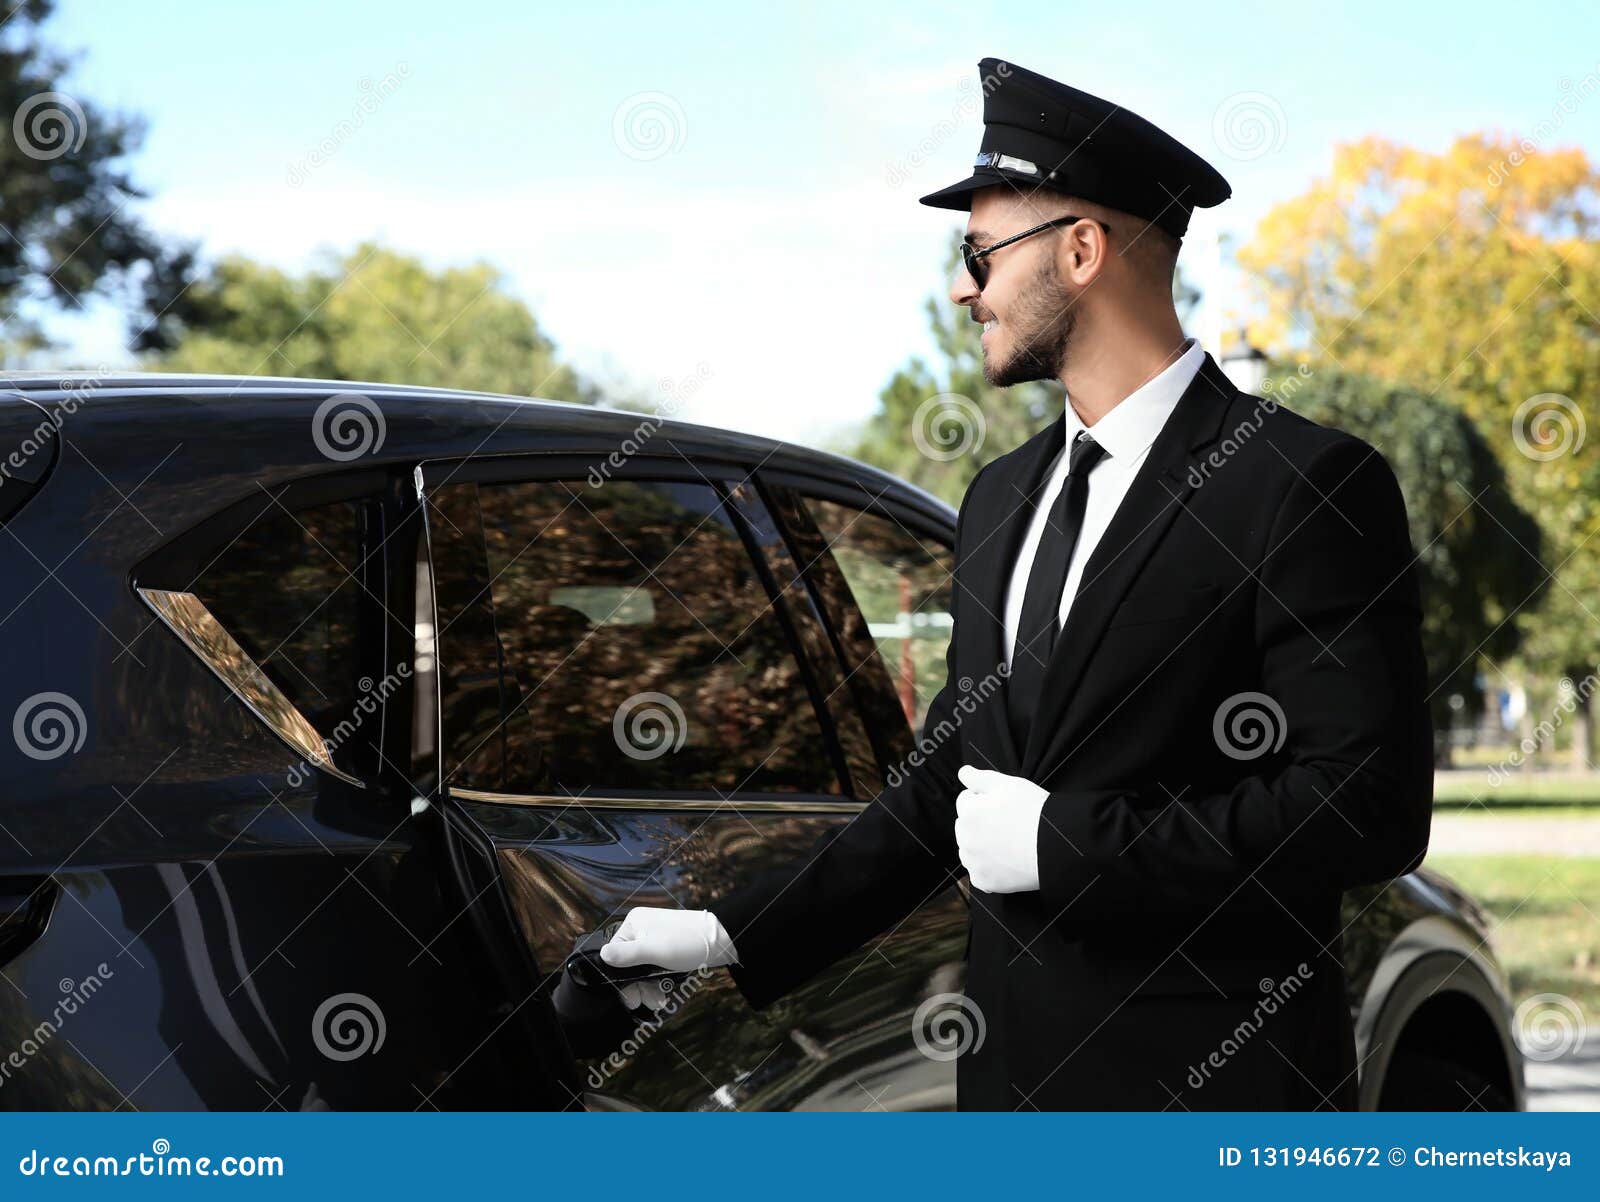 young handsome driver opening luxury car door